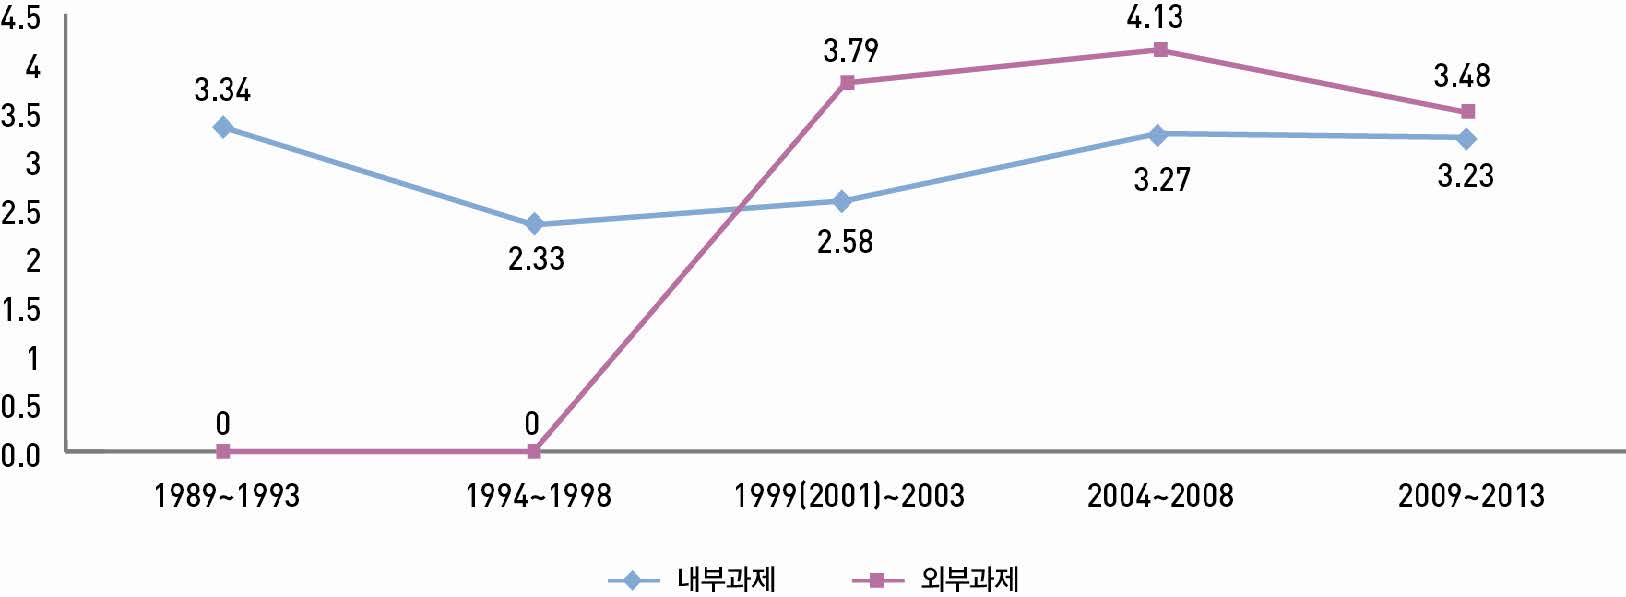 【그림 Ⅲ-16】연도별 연구유형에 따른 평균 연구참여자 수 변화 추이